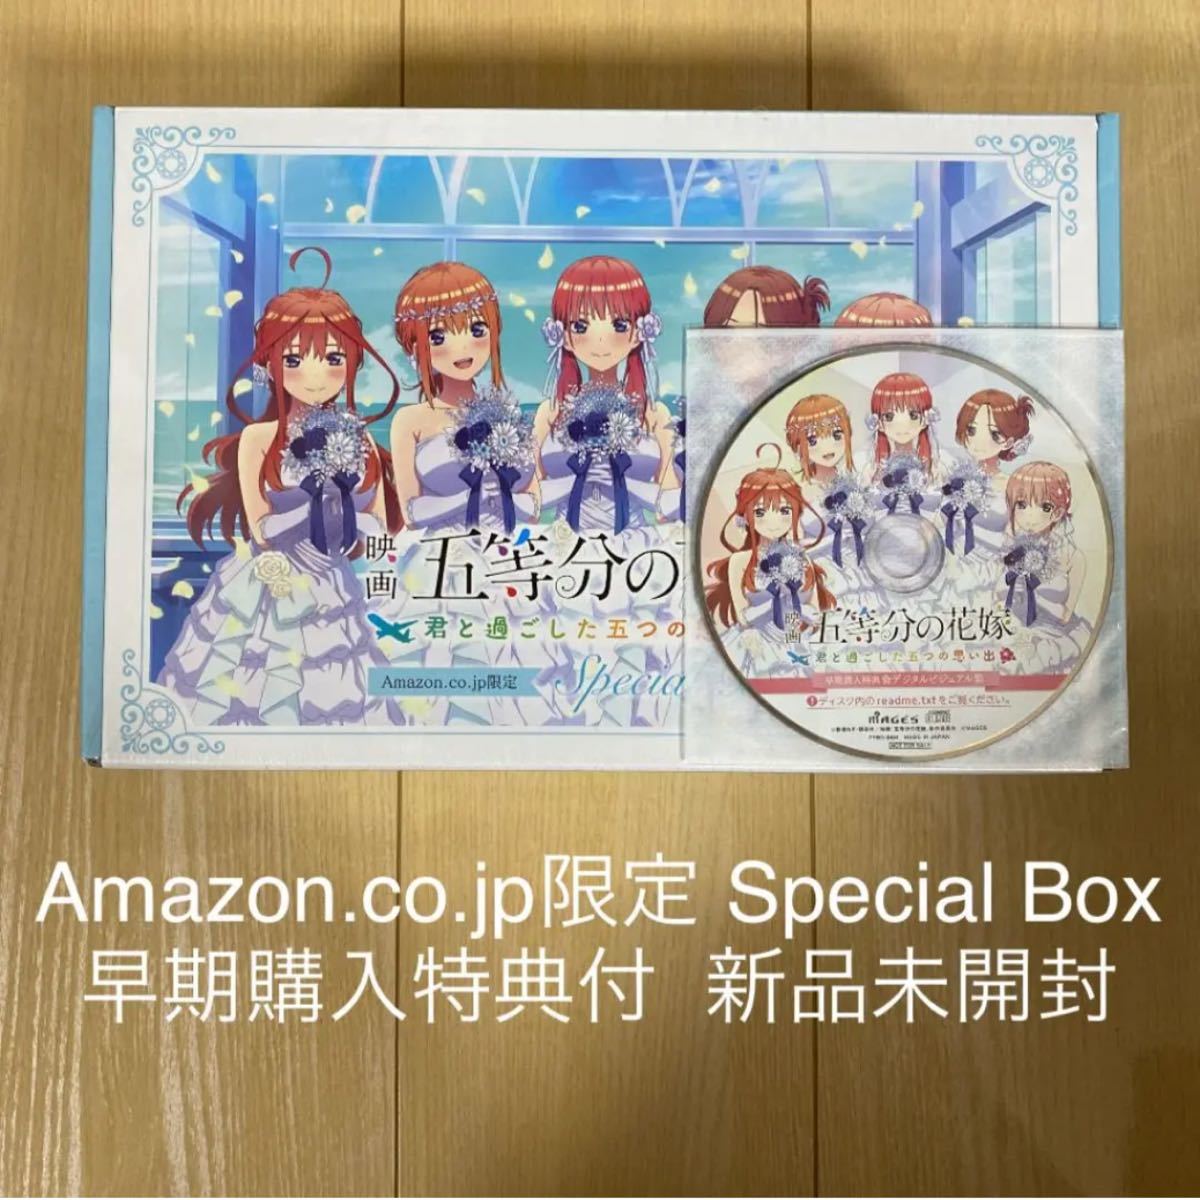 PS4】映画「五等分の花嫁」 ~君と過ごした五つの思い出~ Amazon co jp